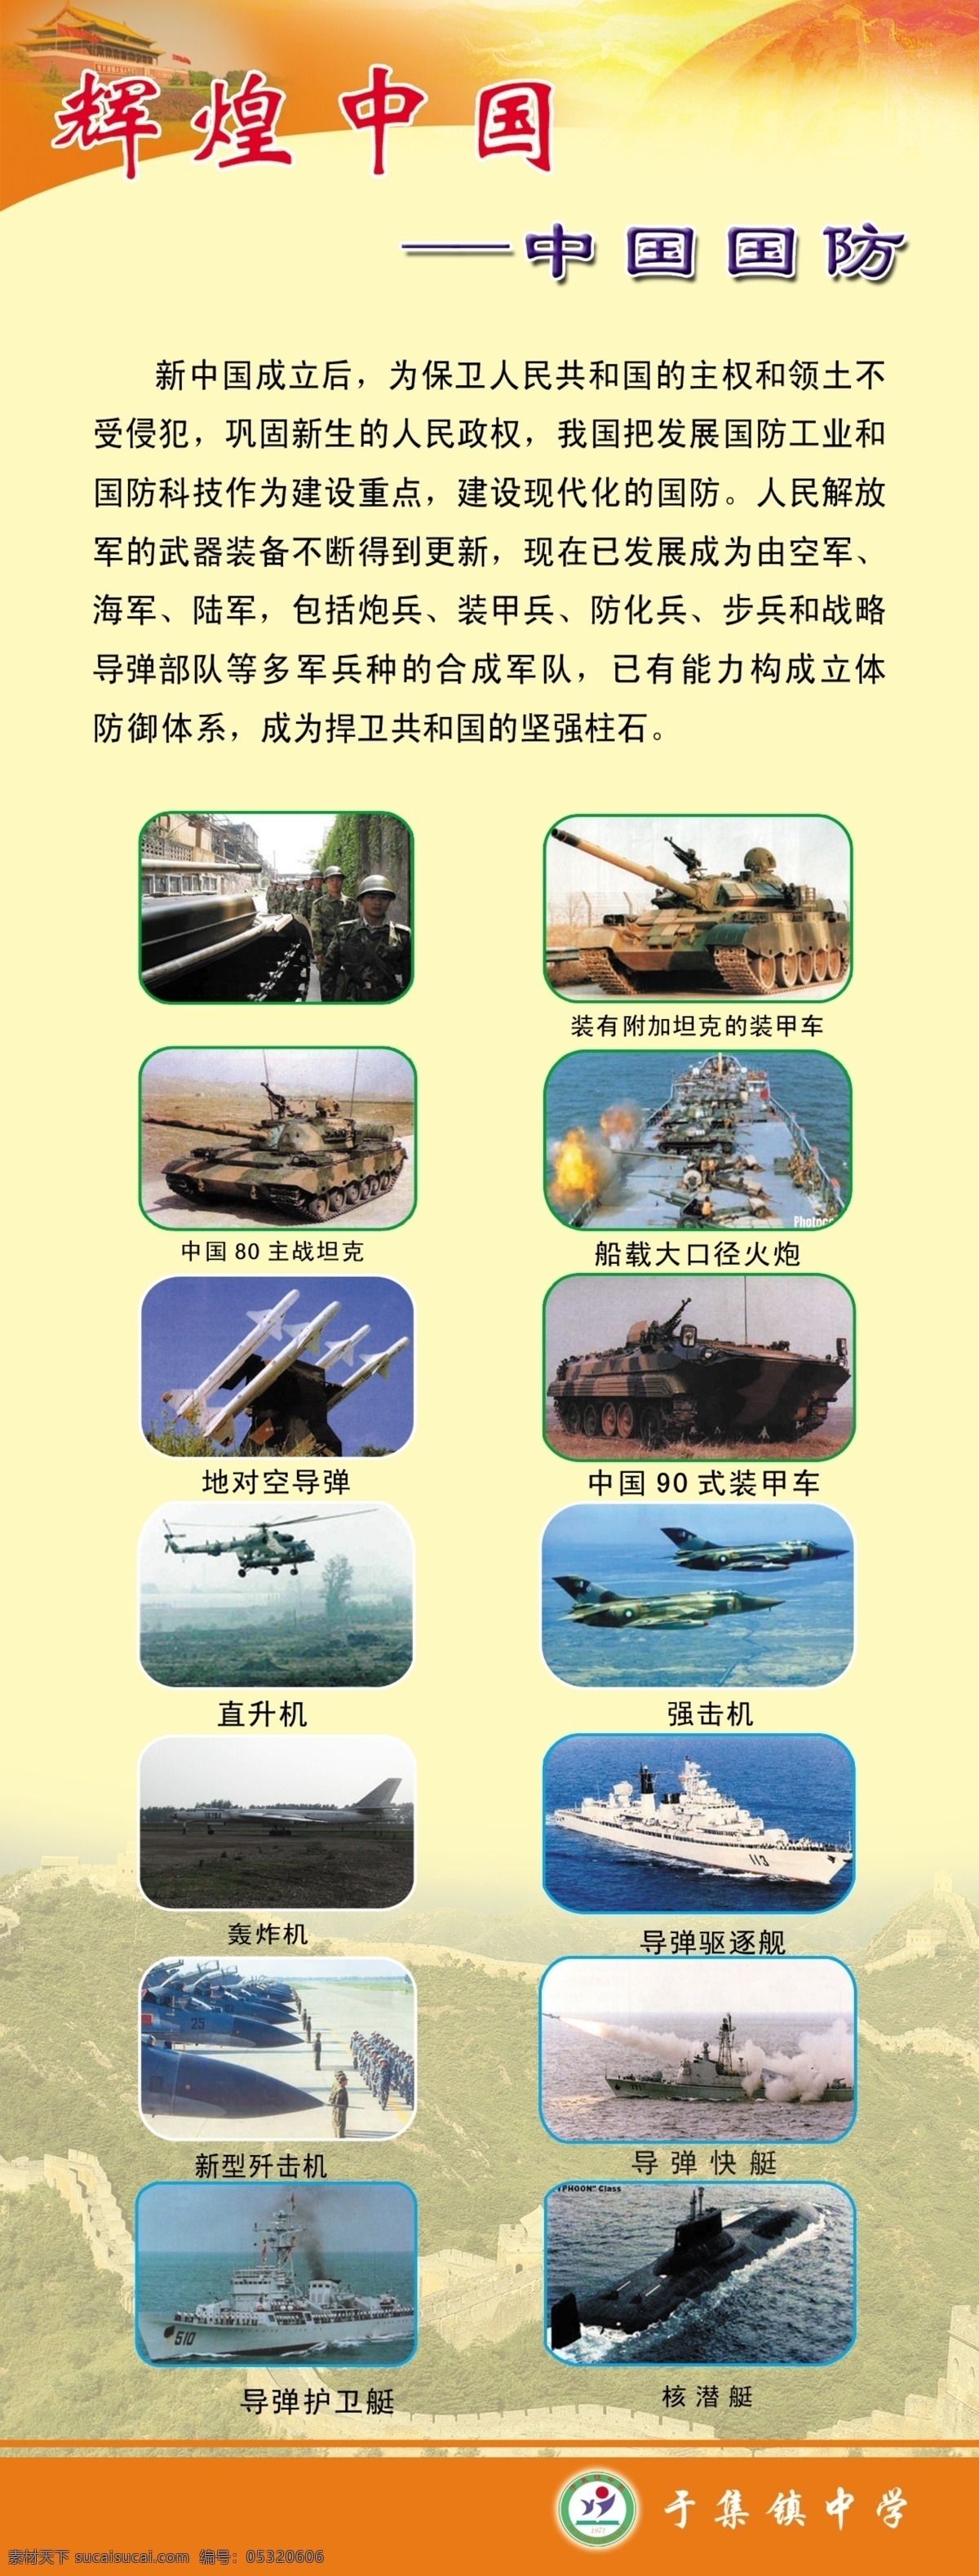 中国辉煌 中国 辉煌 国防 学校国防教育 国防教育 海陆空 三军 学校类 展板模板 广告设计模板 源文件